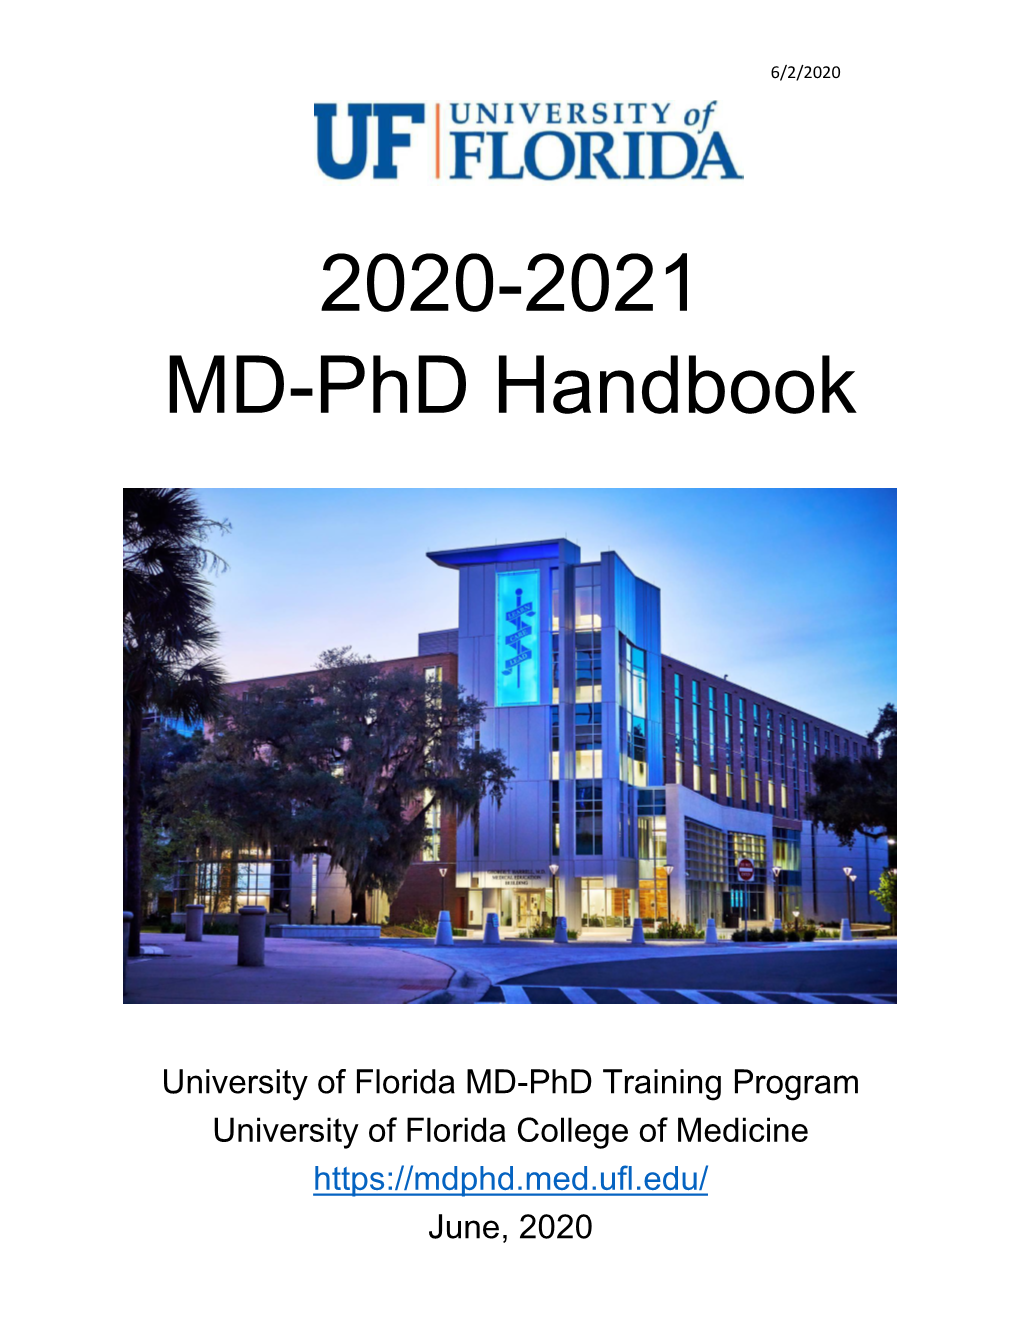 MD-Phd Handbook